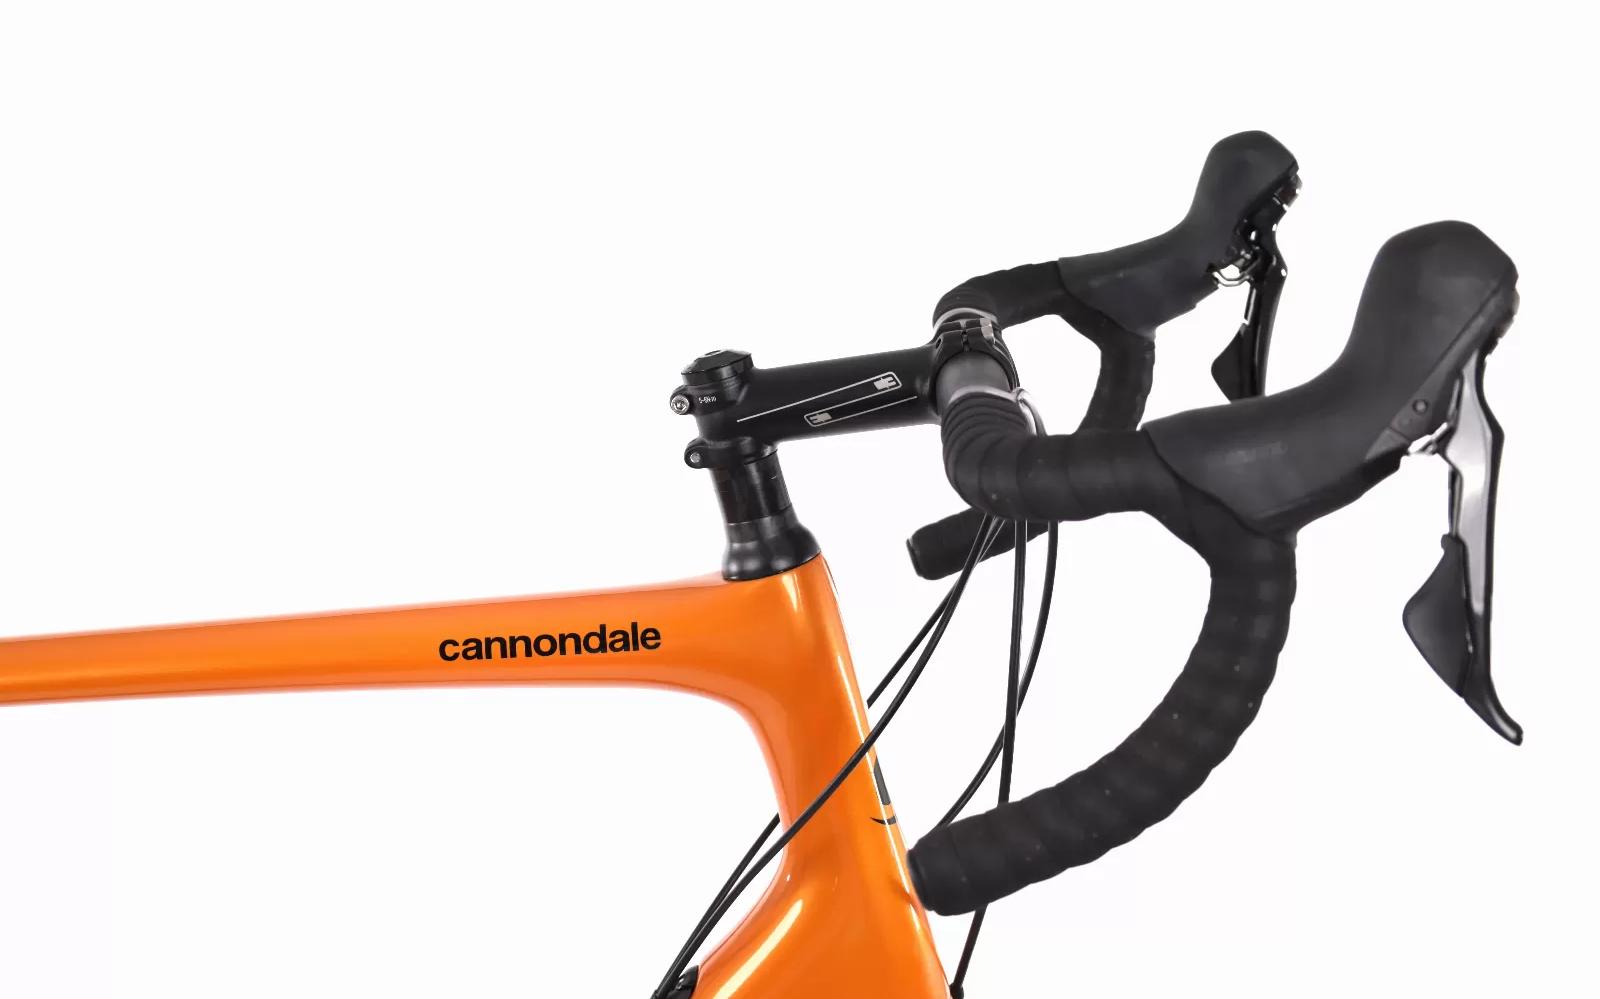 Bici da corsa Cannondale Synapse Carbon, Usata, 2020, Valencia